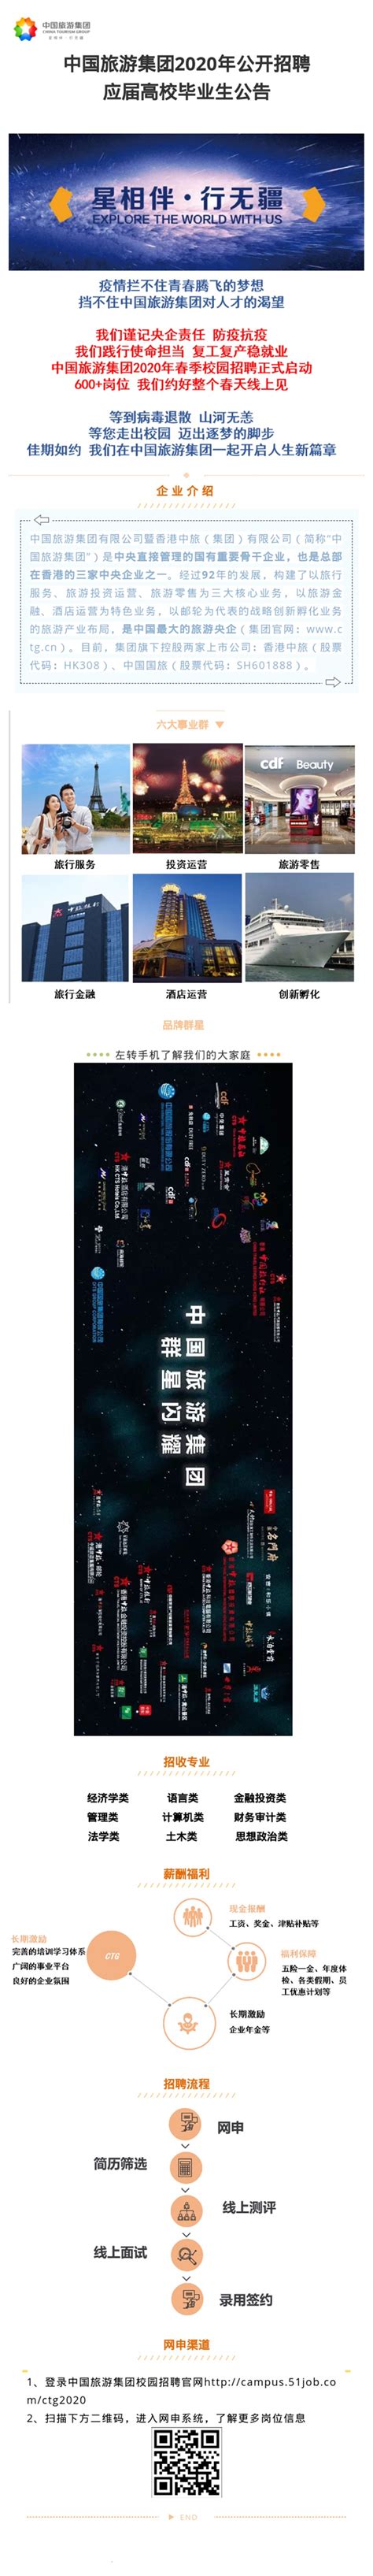 2020广东旅博会在广州开幕| 广东旅博会官网